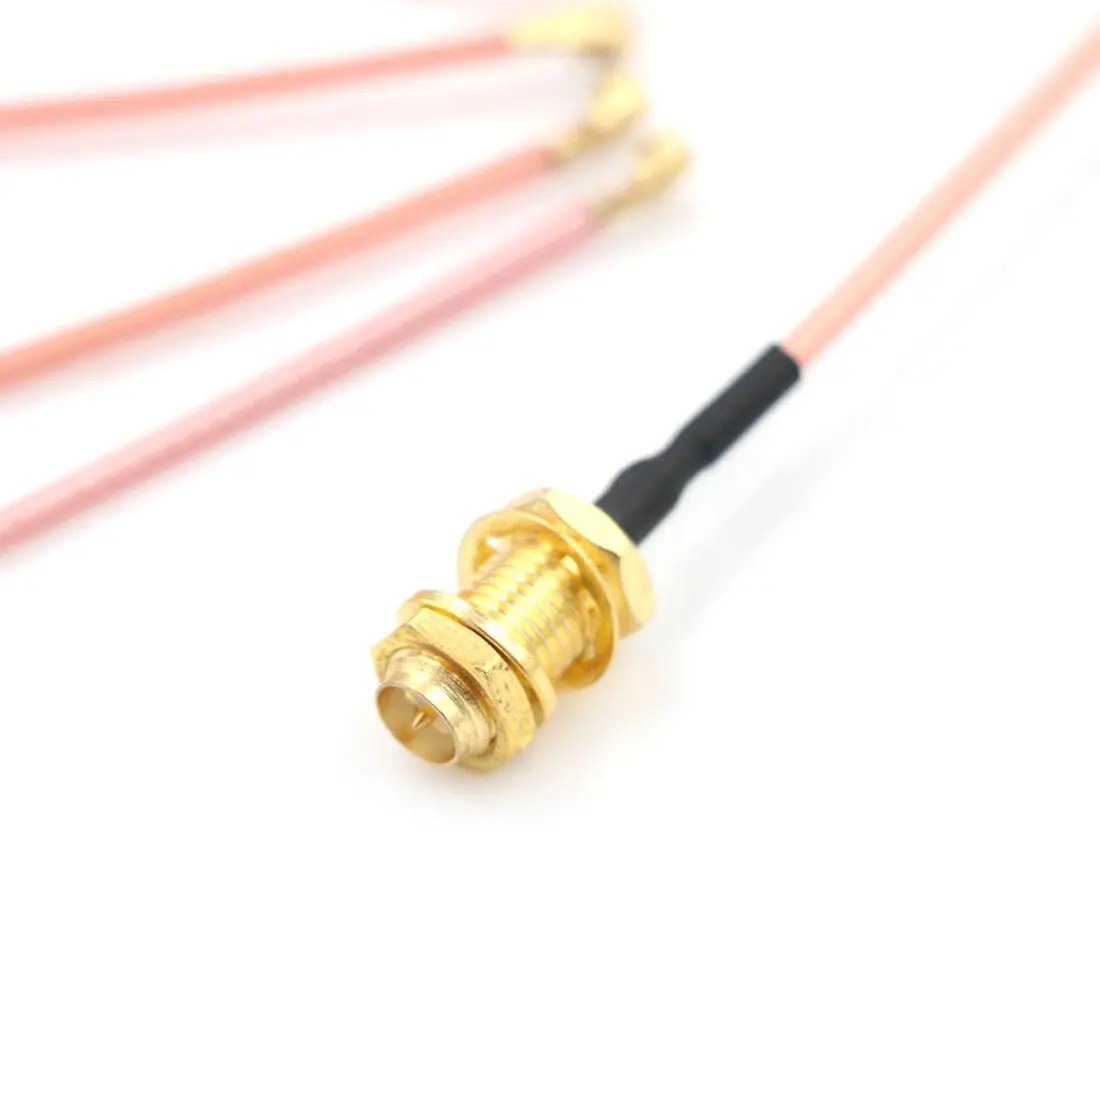 5 шт. кабель разъема SMA мама к uFL/u. FL/IPX/ipex РЧ или без разъема коаксиальный адаптер в сборе RG178 косичка кабель 1,13 мм